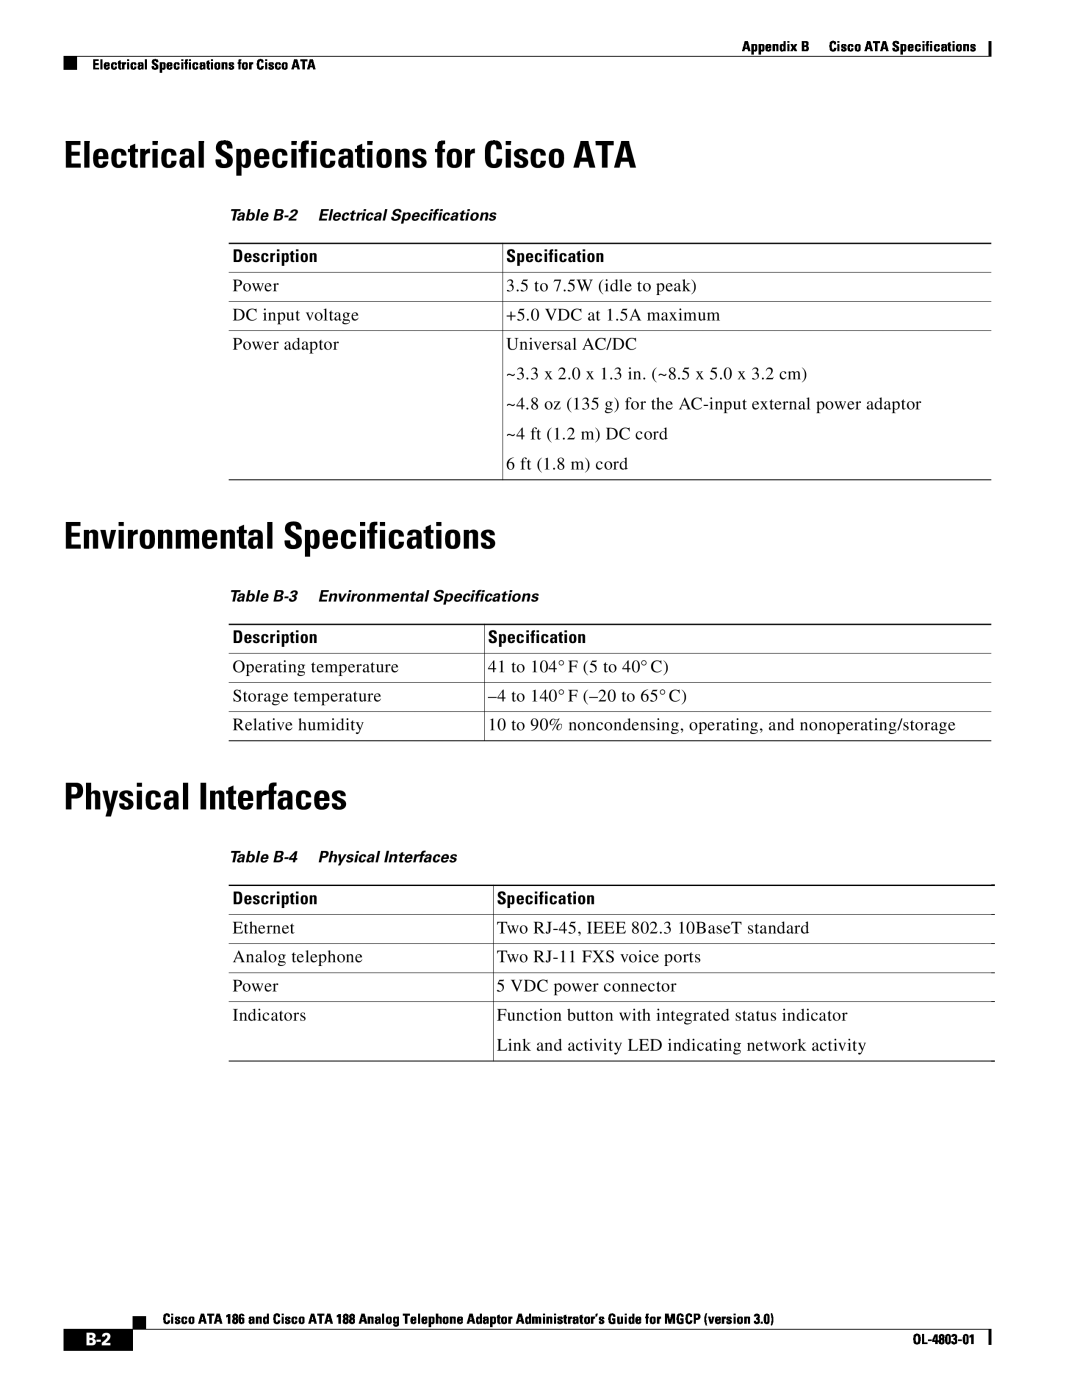 Cisco Systems ATA 186, ATA 188 Electrical Specifications for Cisco ATA, Environmental Specifications, Physical Interfaces 